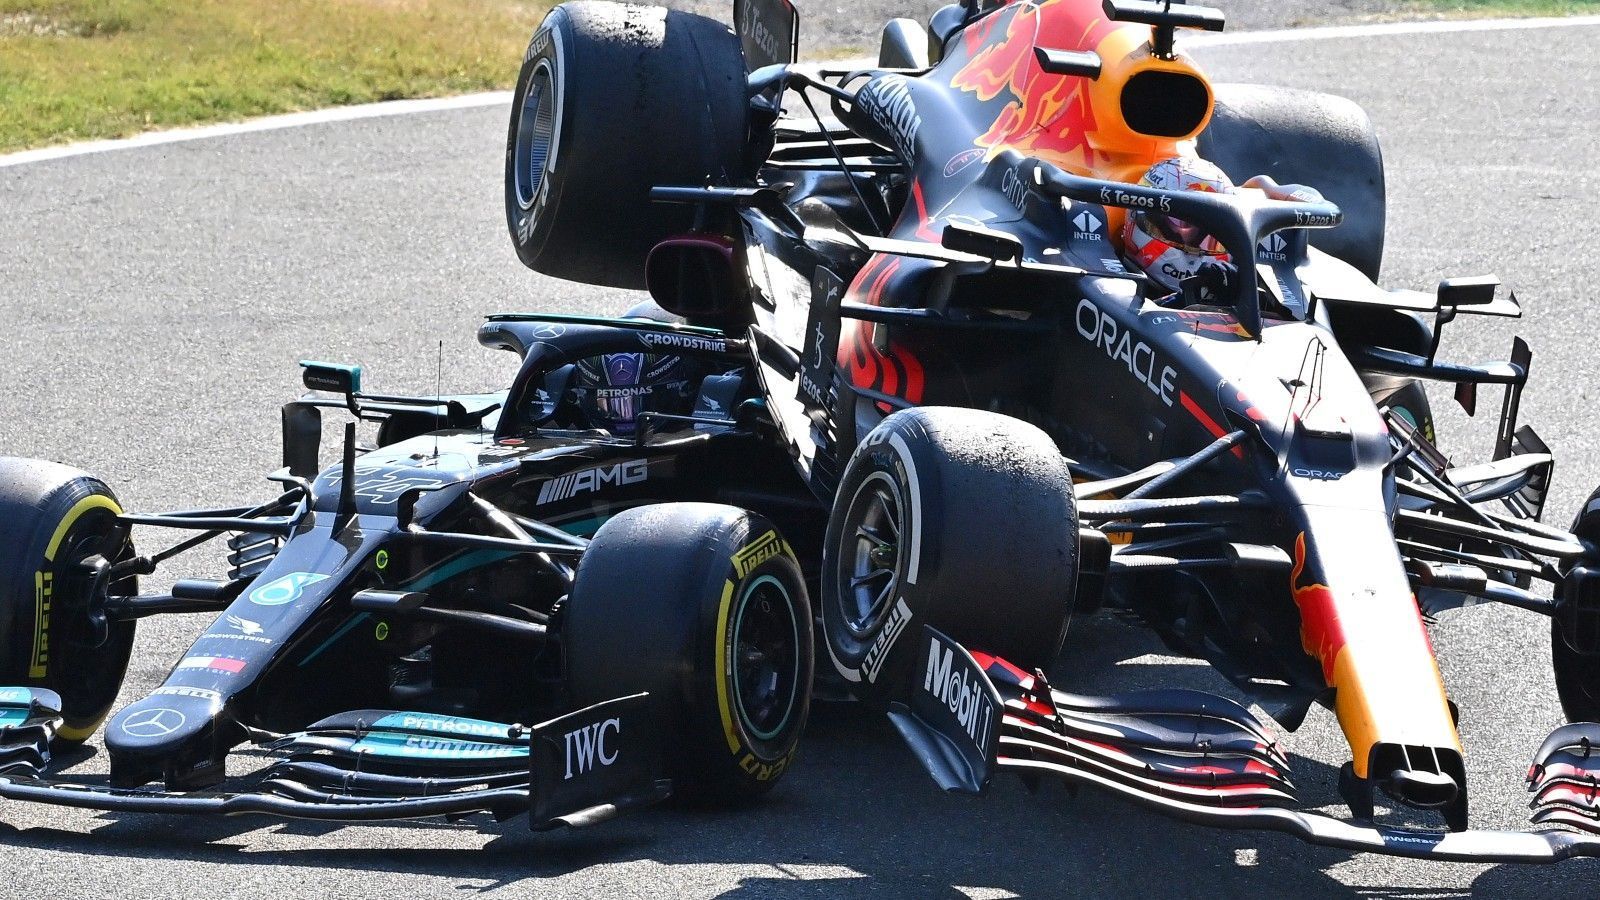 
                <strong>Hamilton im Duell mit Verstappen</strong><br>
                Lewis Hamilton konnte sich beim Grand Prix in Monza 2021 bei seinem Cockpitschutz bedanken. Seinerzeit kollidierte er in seinem Mercedes mit Max Verstappen. Dessen Red Bull schleuderte über den Briten hinweg, traf den Überrollbügel mit dem Unterboden, zudem mit dem rechten Hinterrad den Halo. Wäre dieser nicht an Ort und Stelle gewesen, hätte das Rad Hamilton mit voller Wucht am Kopf getroffen.
              